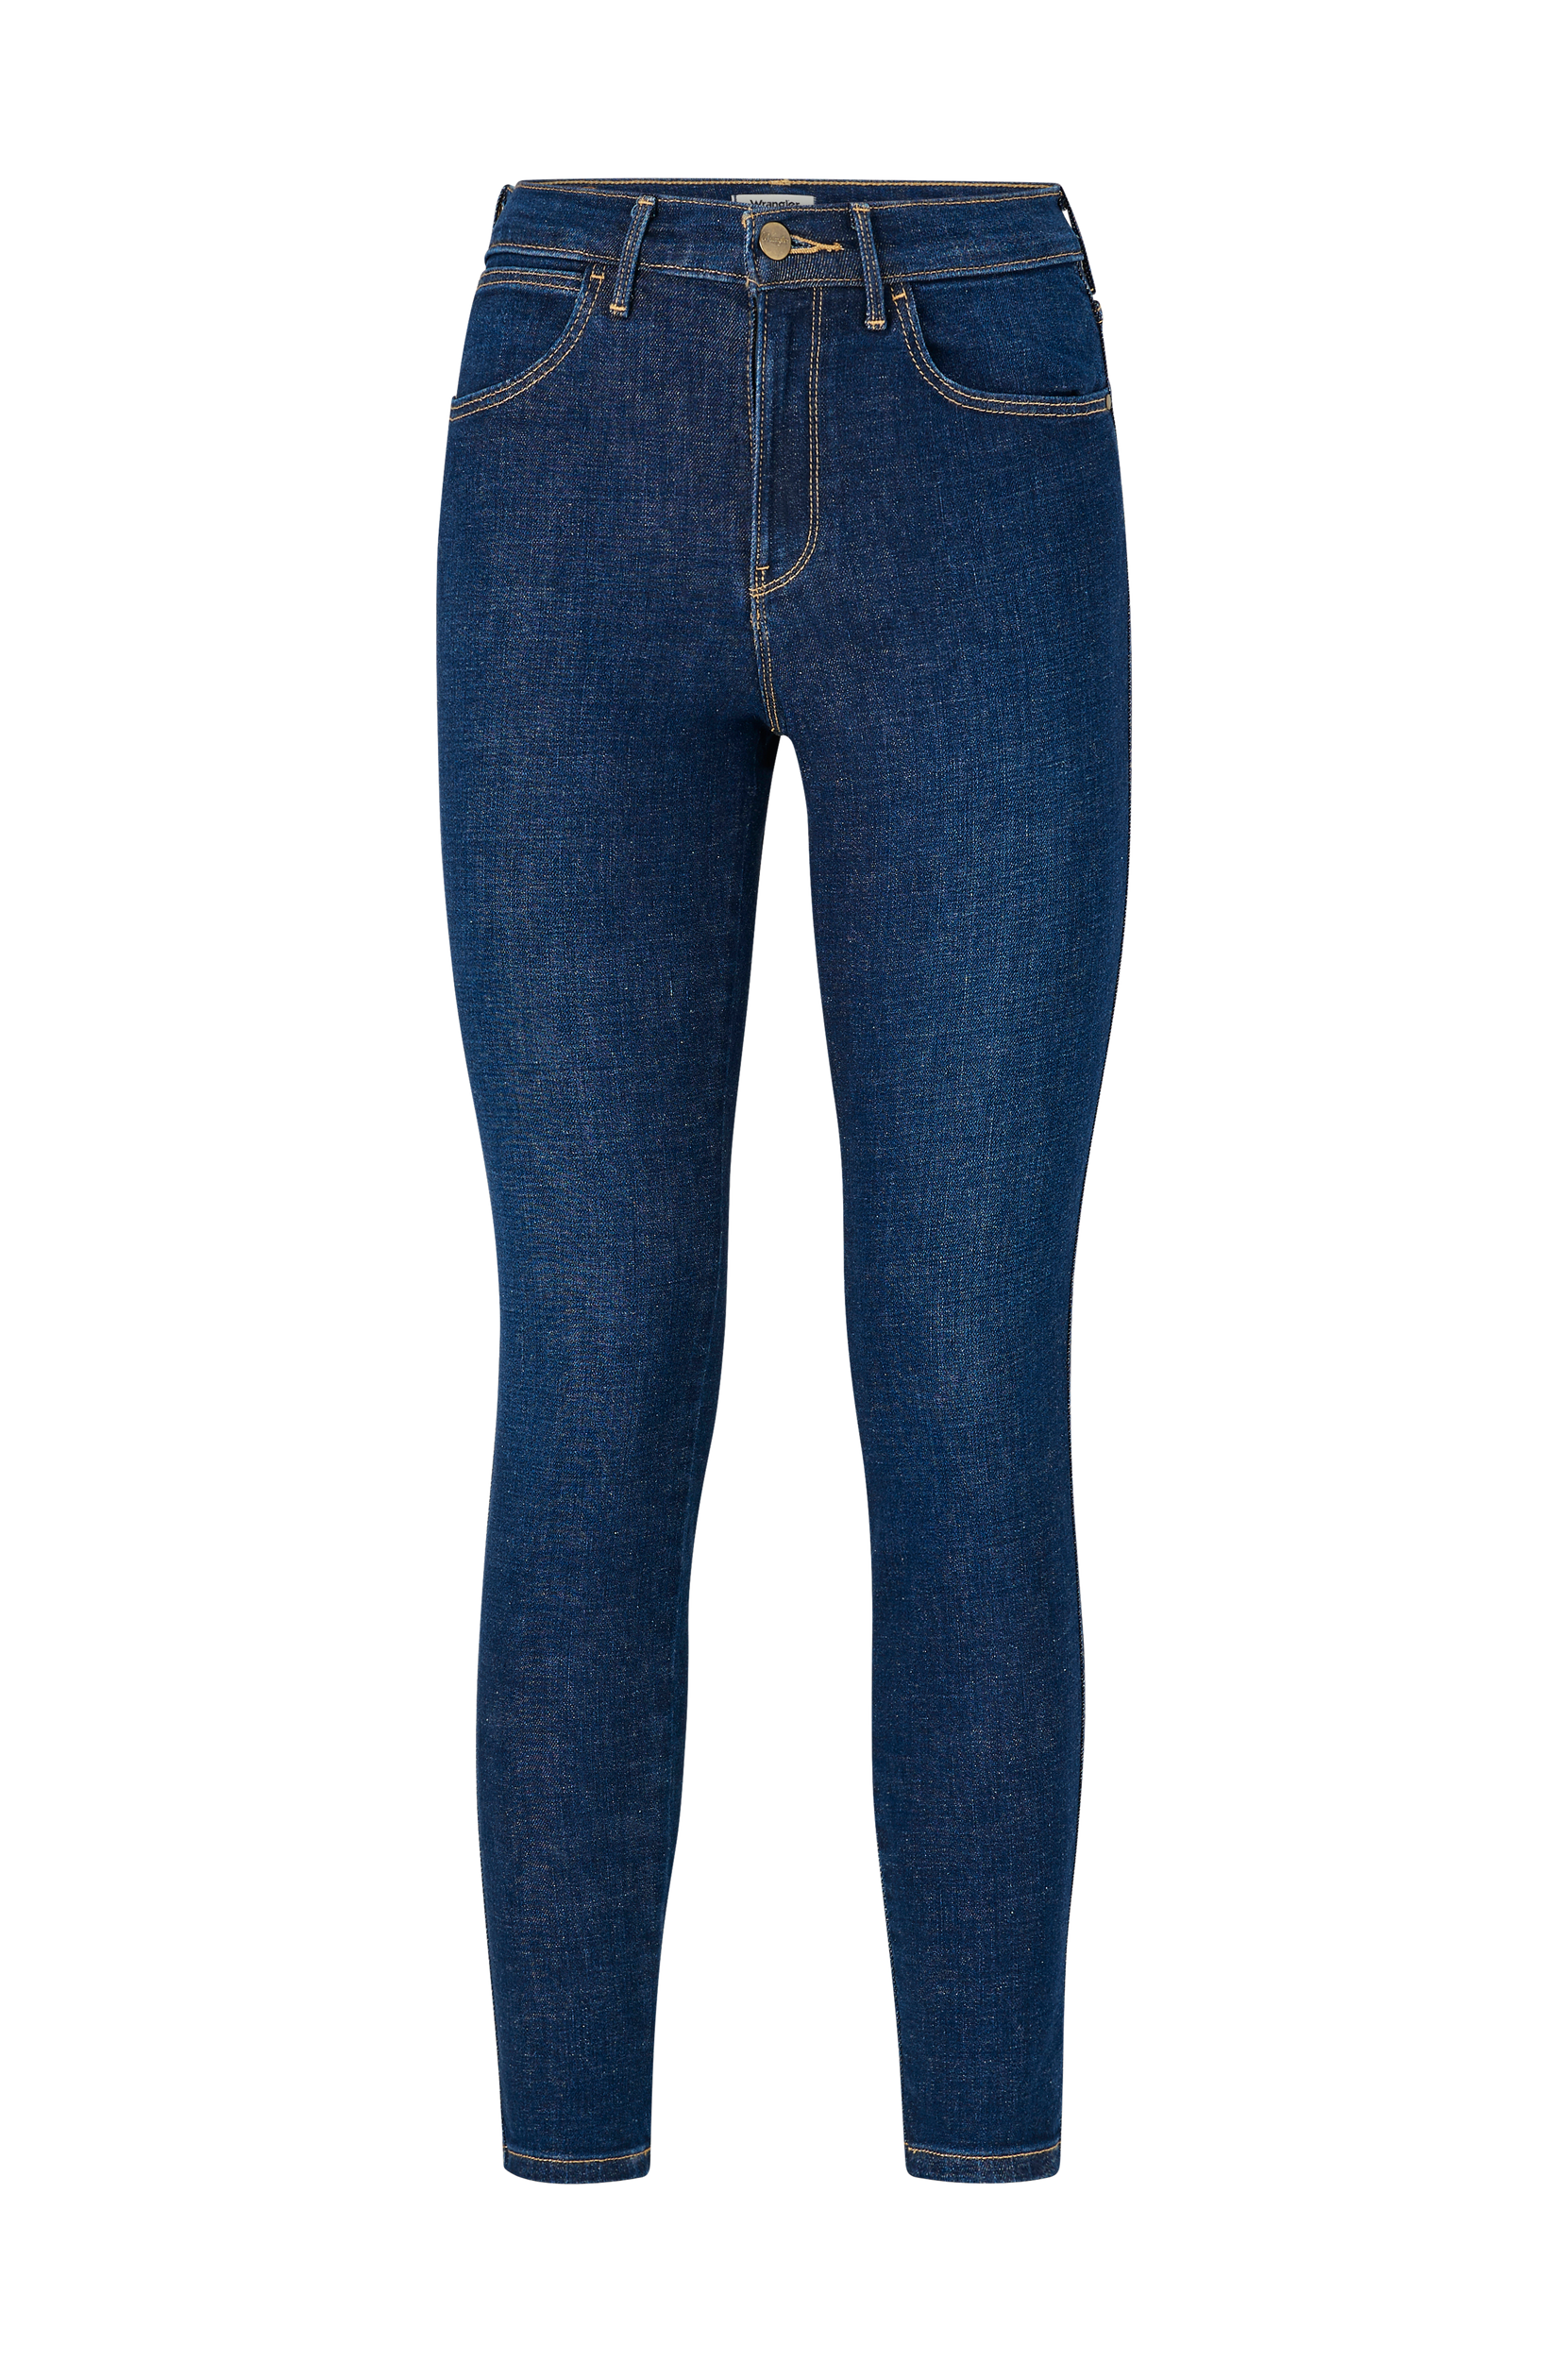 Wrangler - Jeans High Rise Skinny - Blå - W28/L30